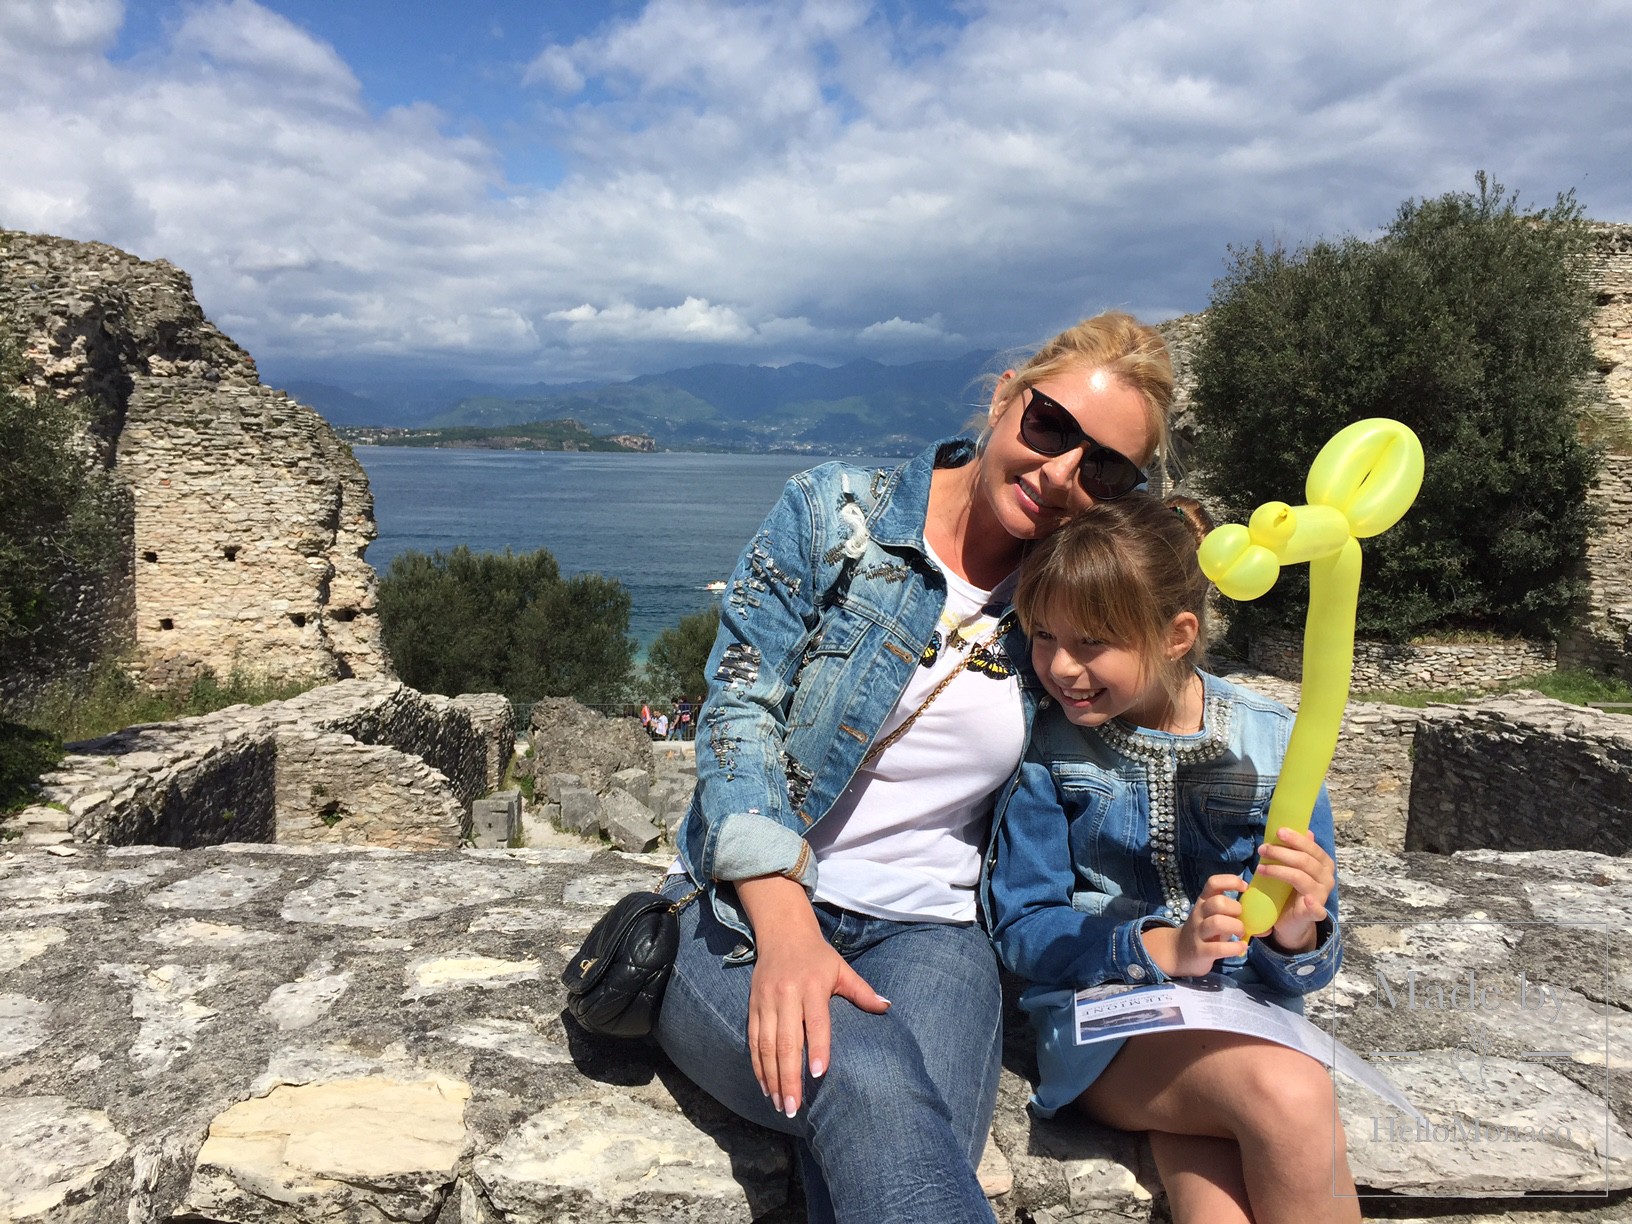 Итальянские каникулы: завершаем путешествие по озеру Гарда